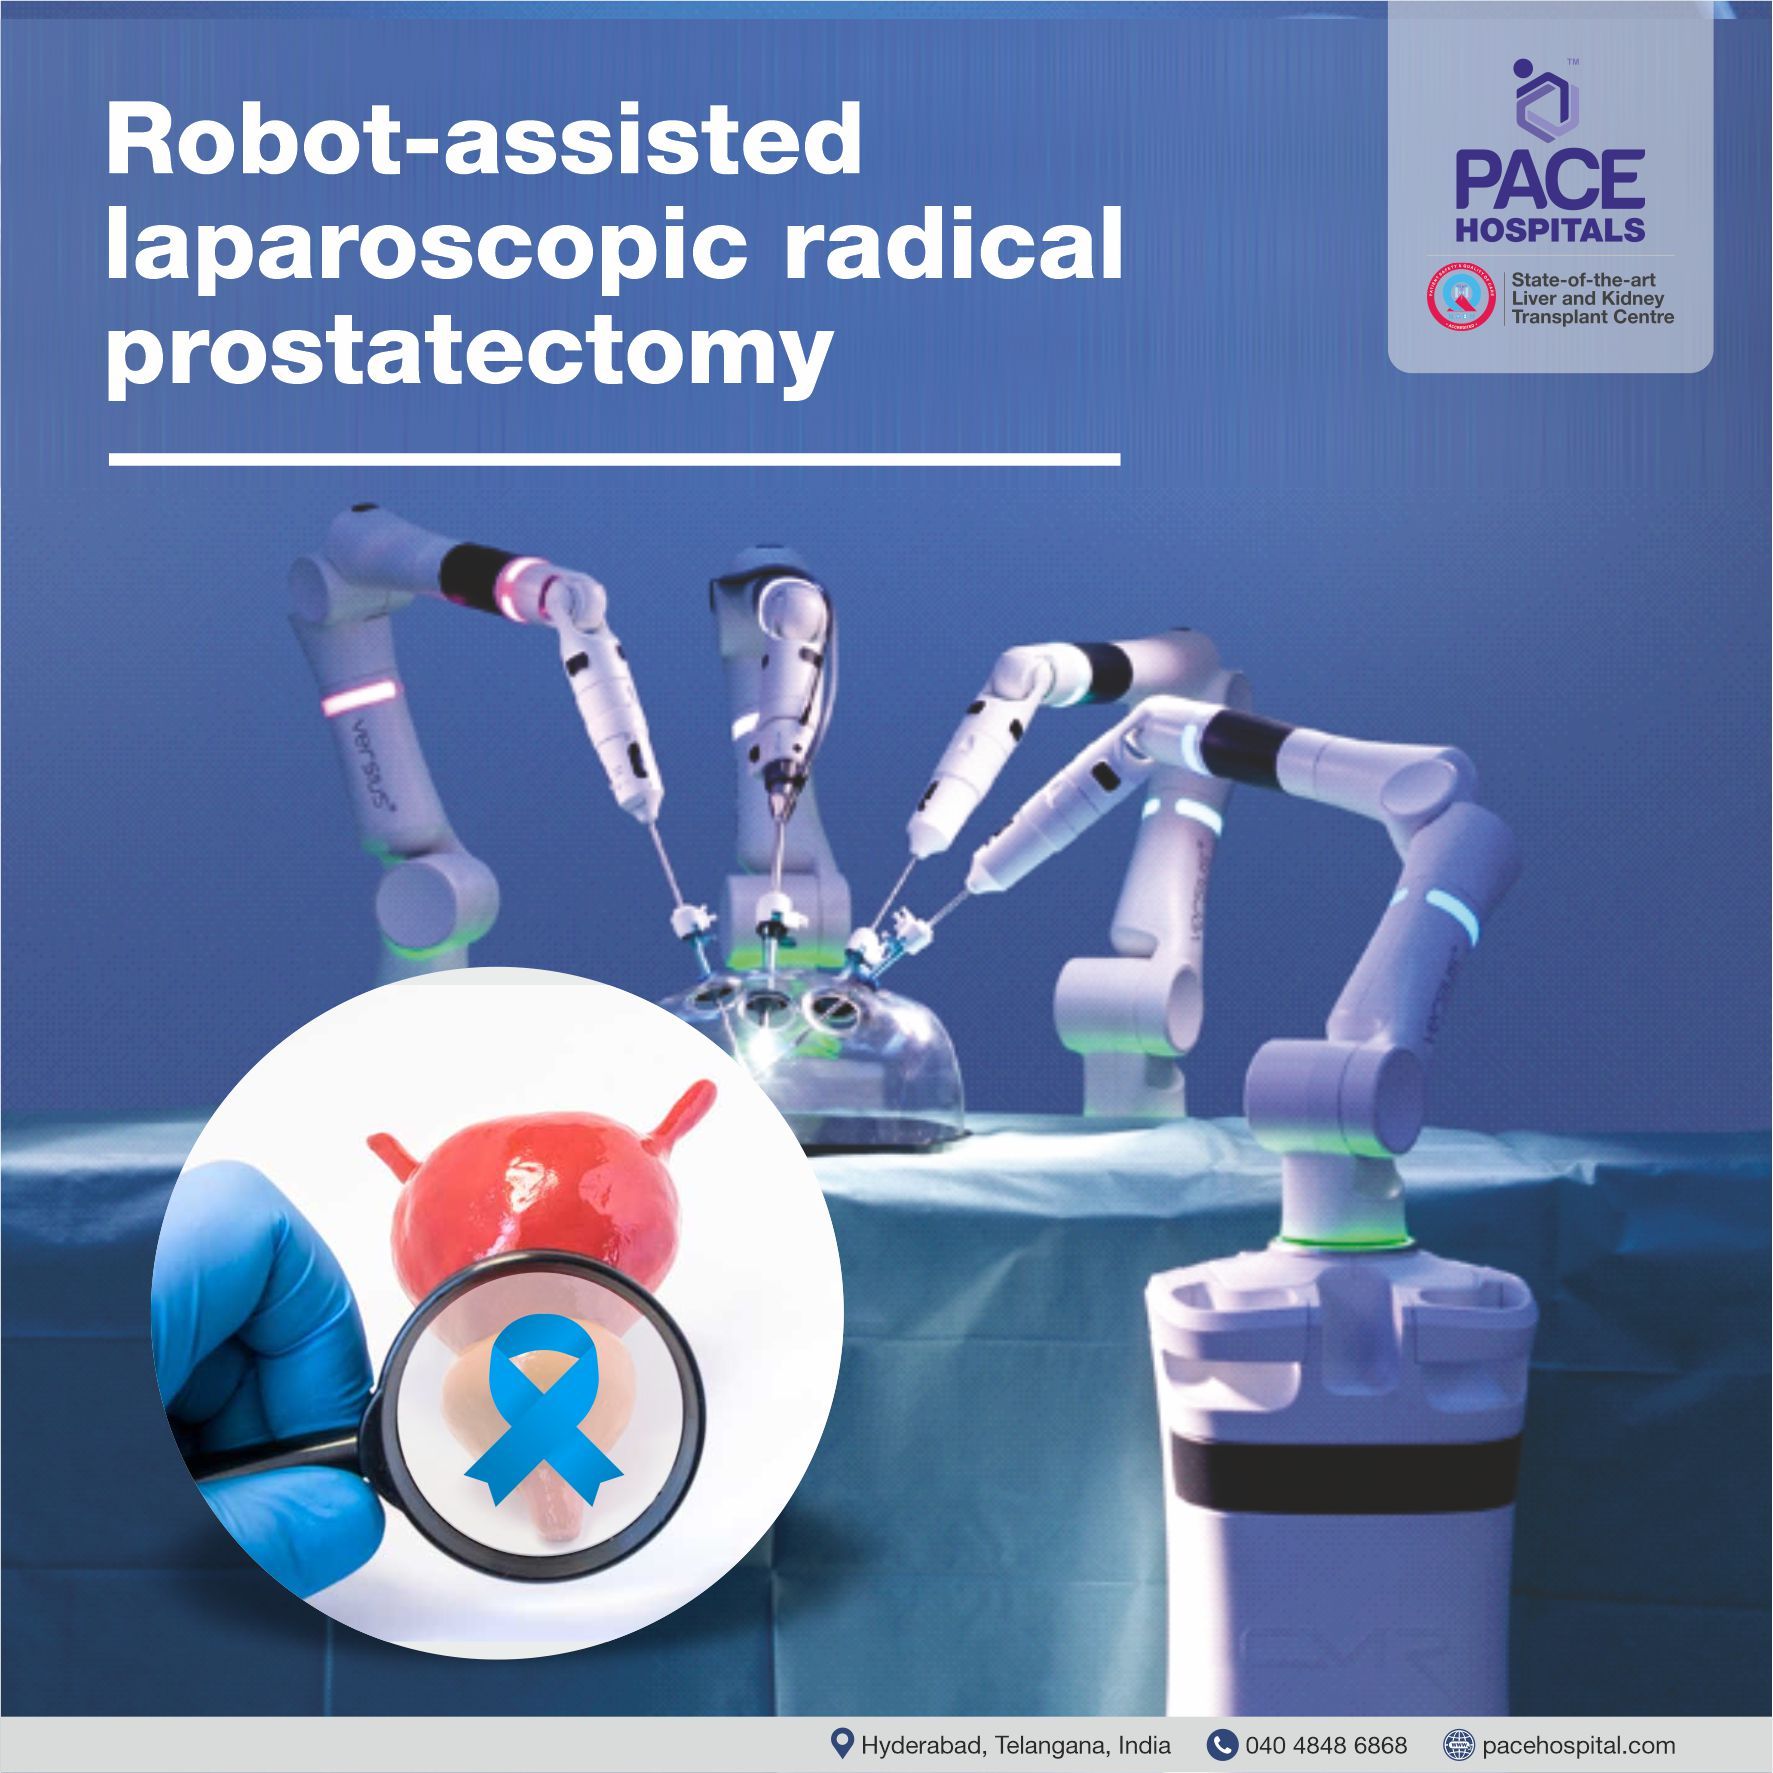 Robot-assisted laparoscopic radical prostatectomy